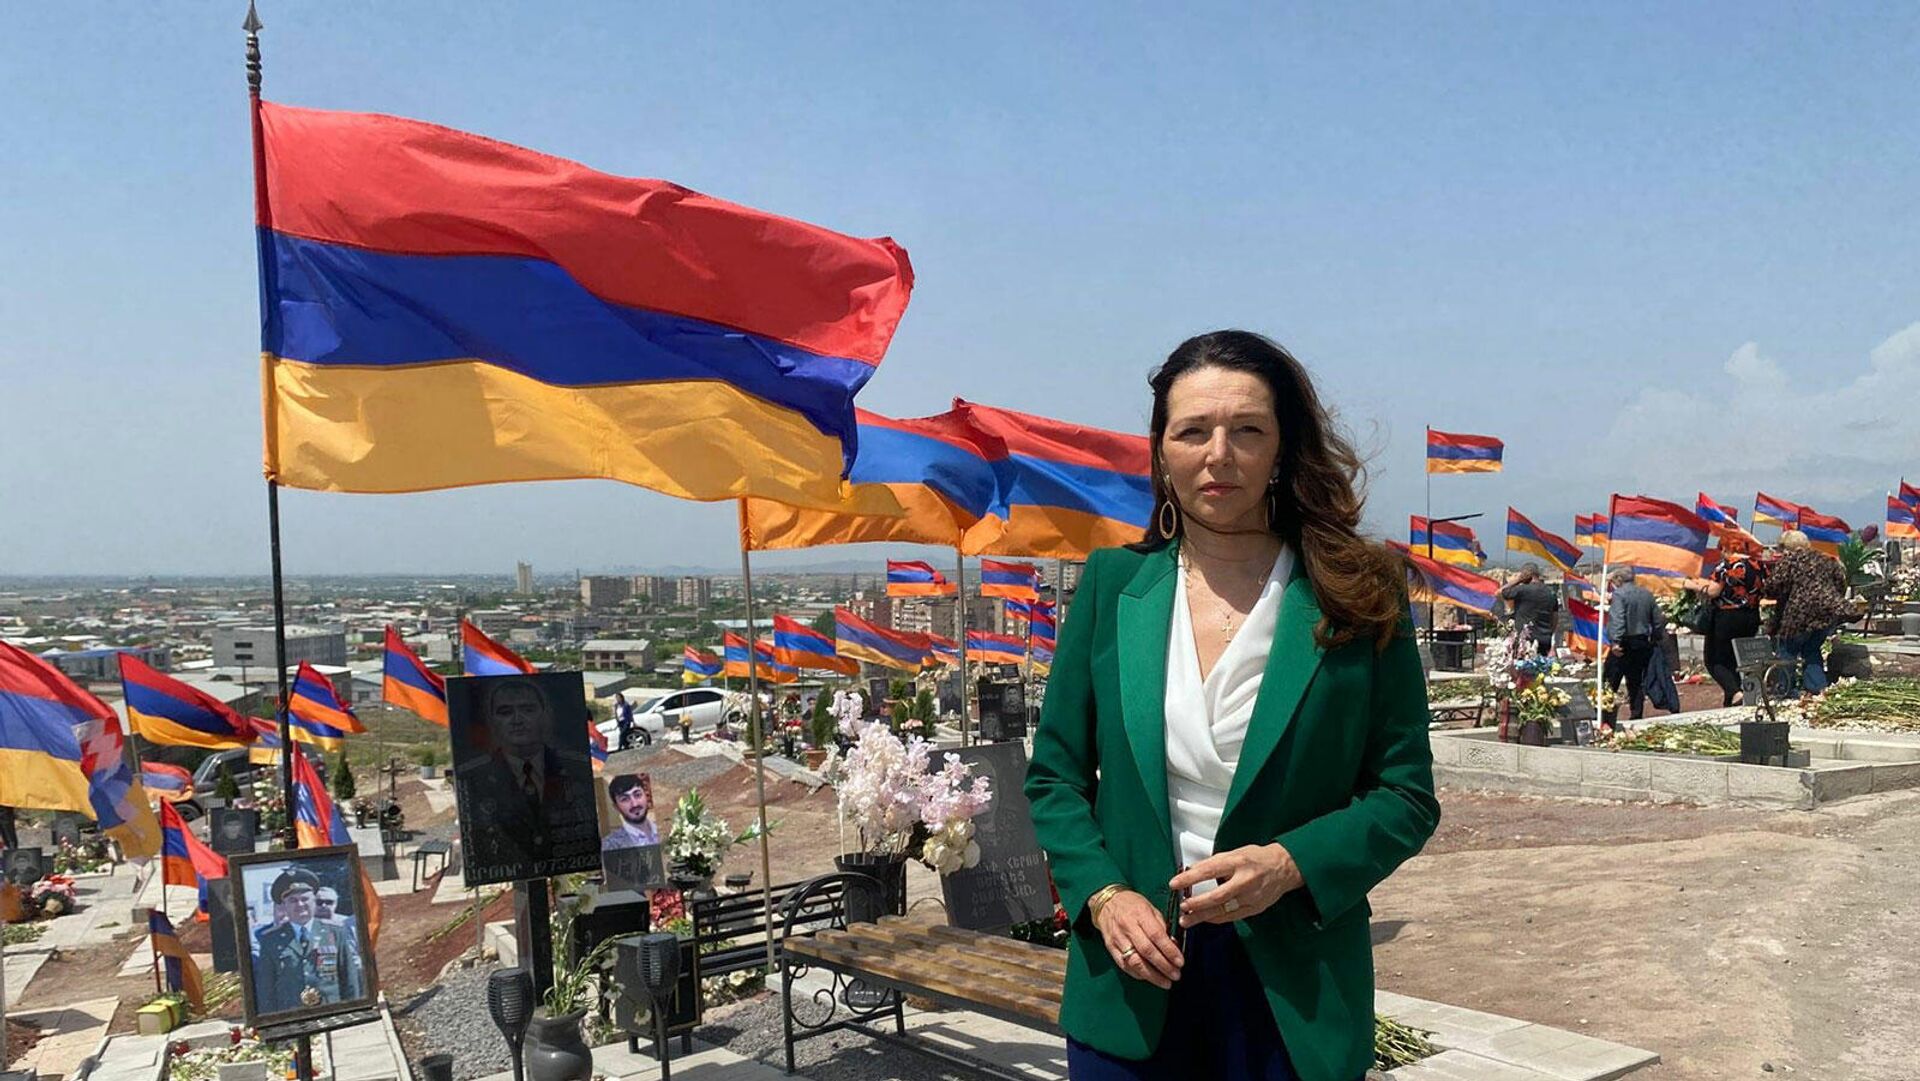 Валери Буайе: необходима единая и немедленная реакция на агрессию Азербайджана против Республики Армения 